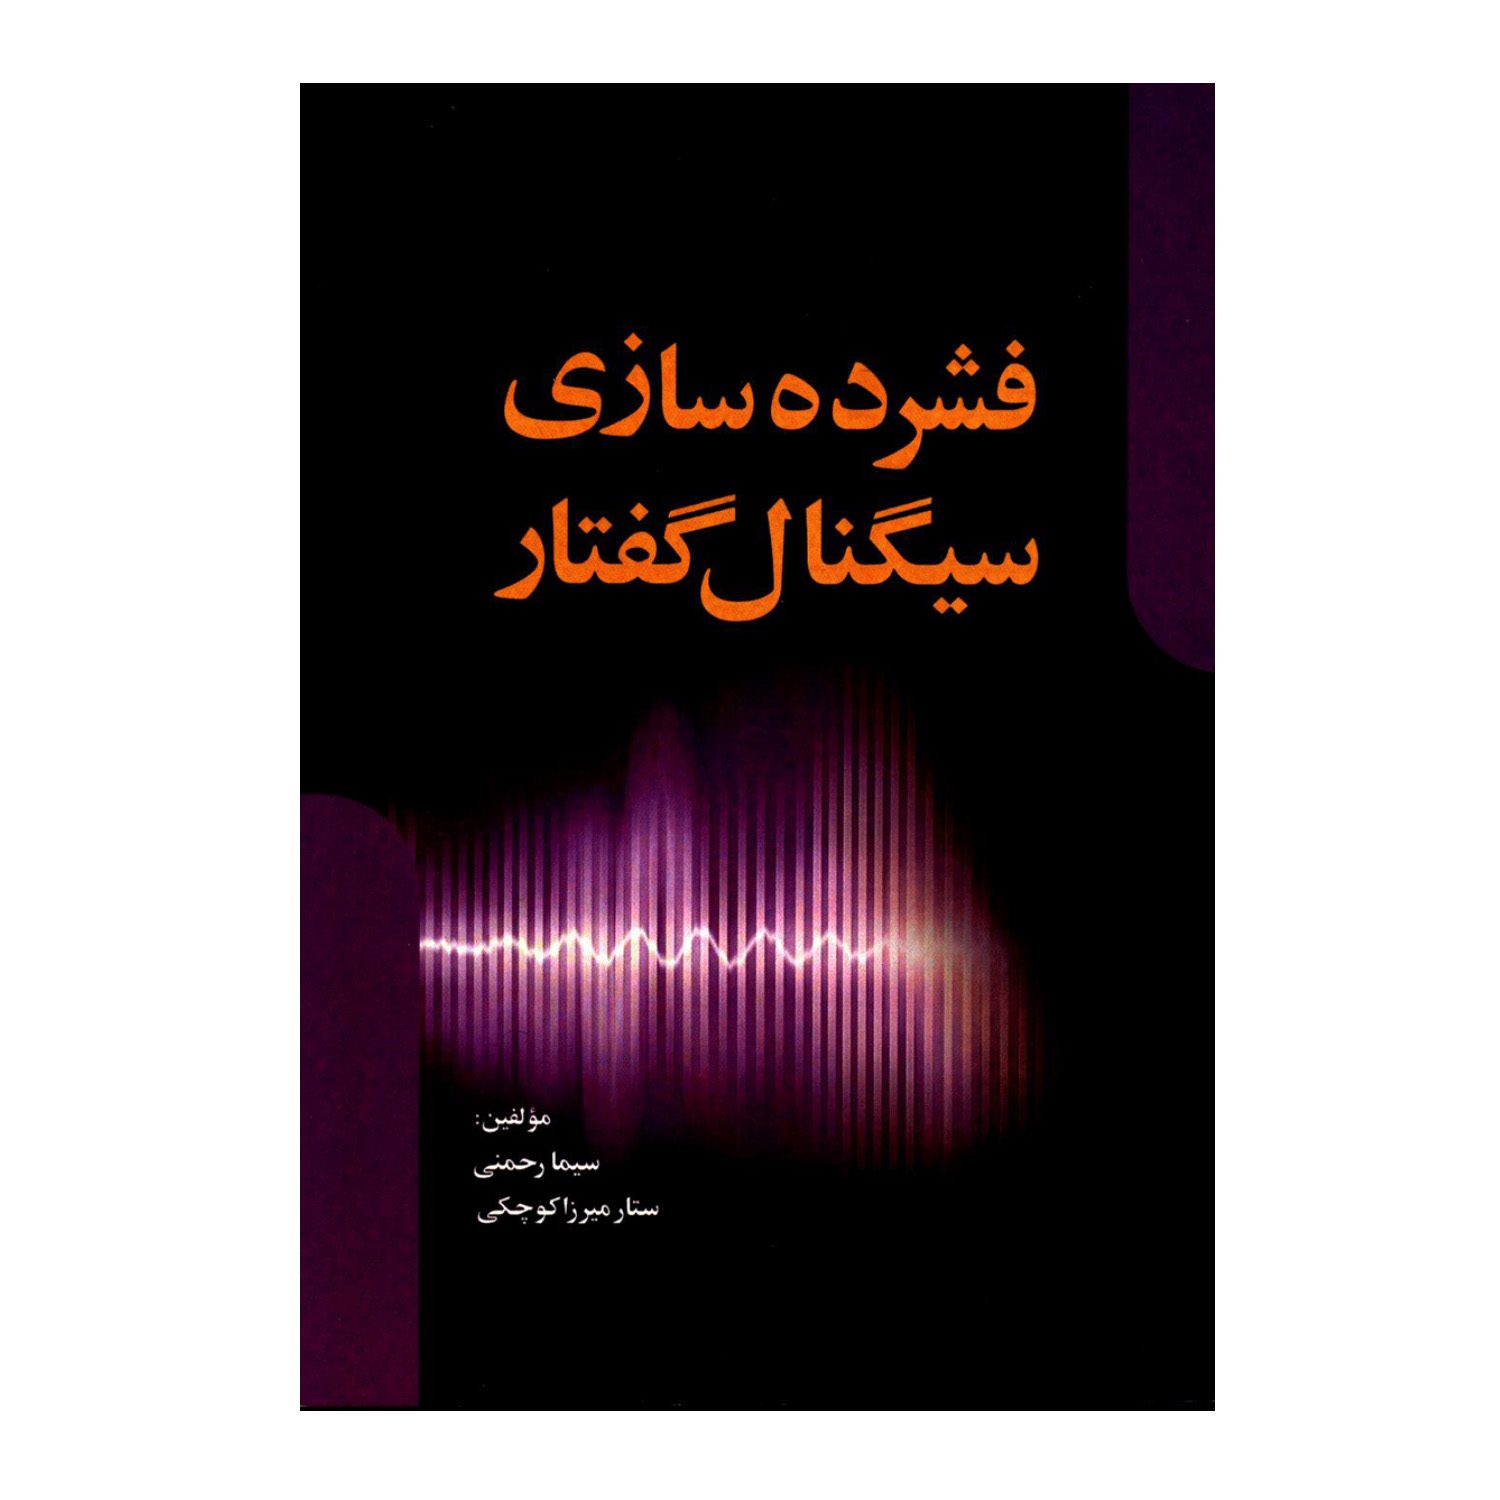 کتاب فشرده سازی سیگنال گفتار اثر سیما رحمنی و ستار میرزاکوچکی انتشارات سخنوران